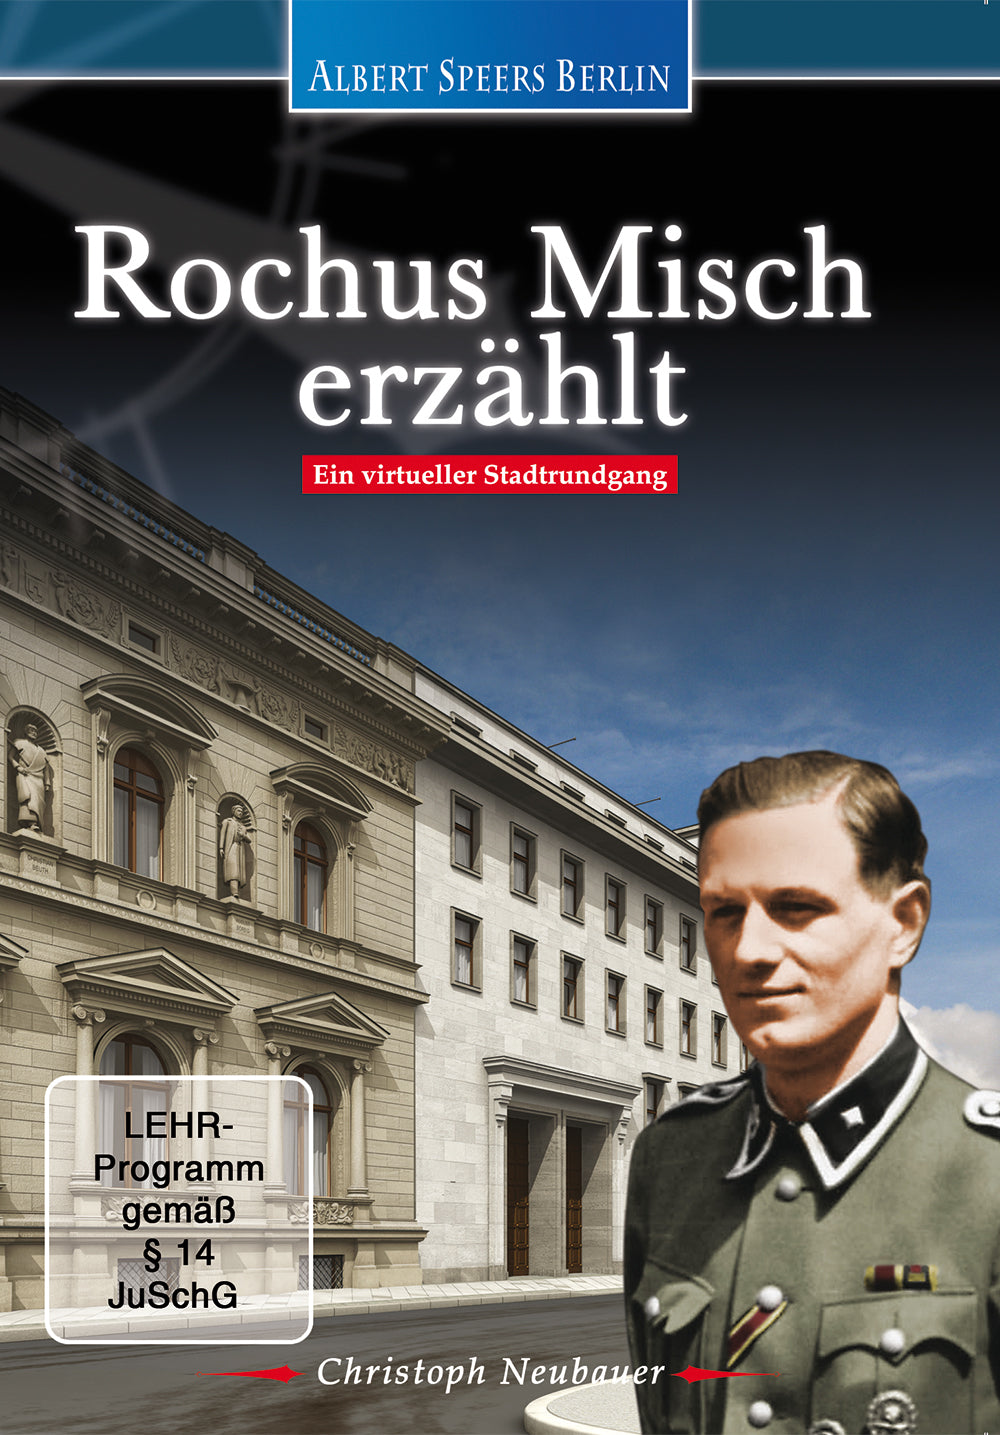 DVD "Rochus Misch erzählt" (Deutsch)